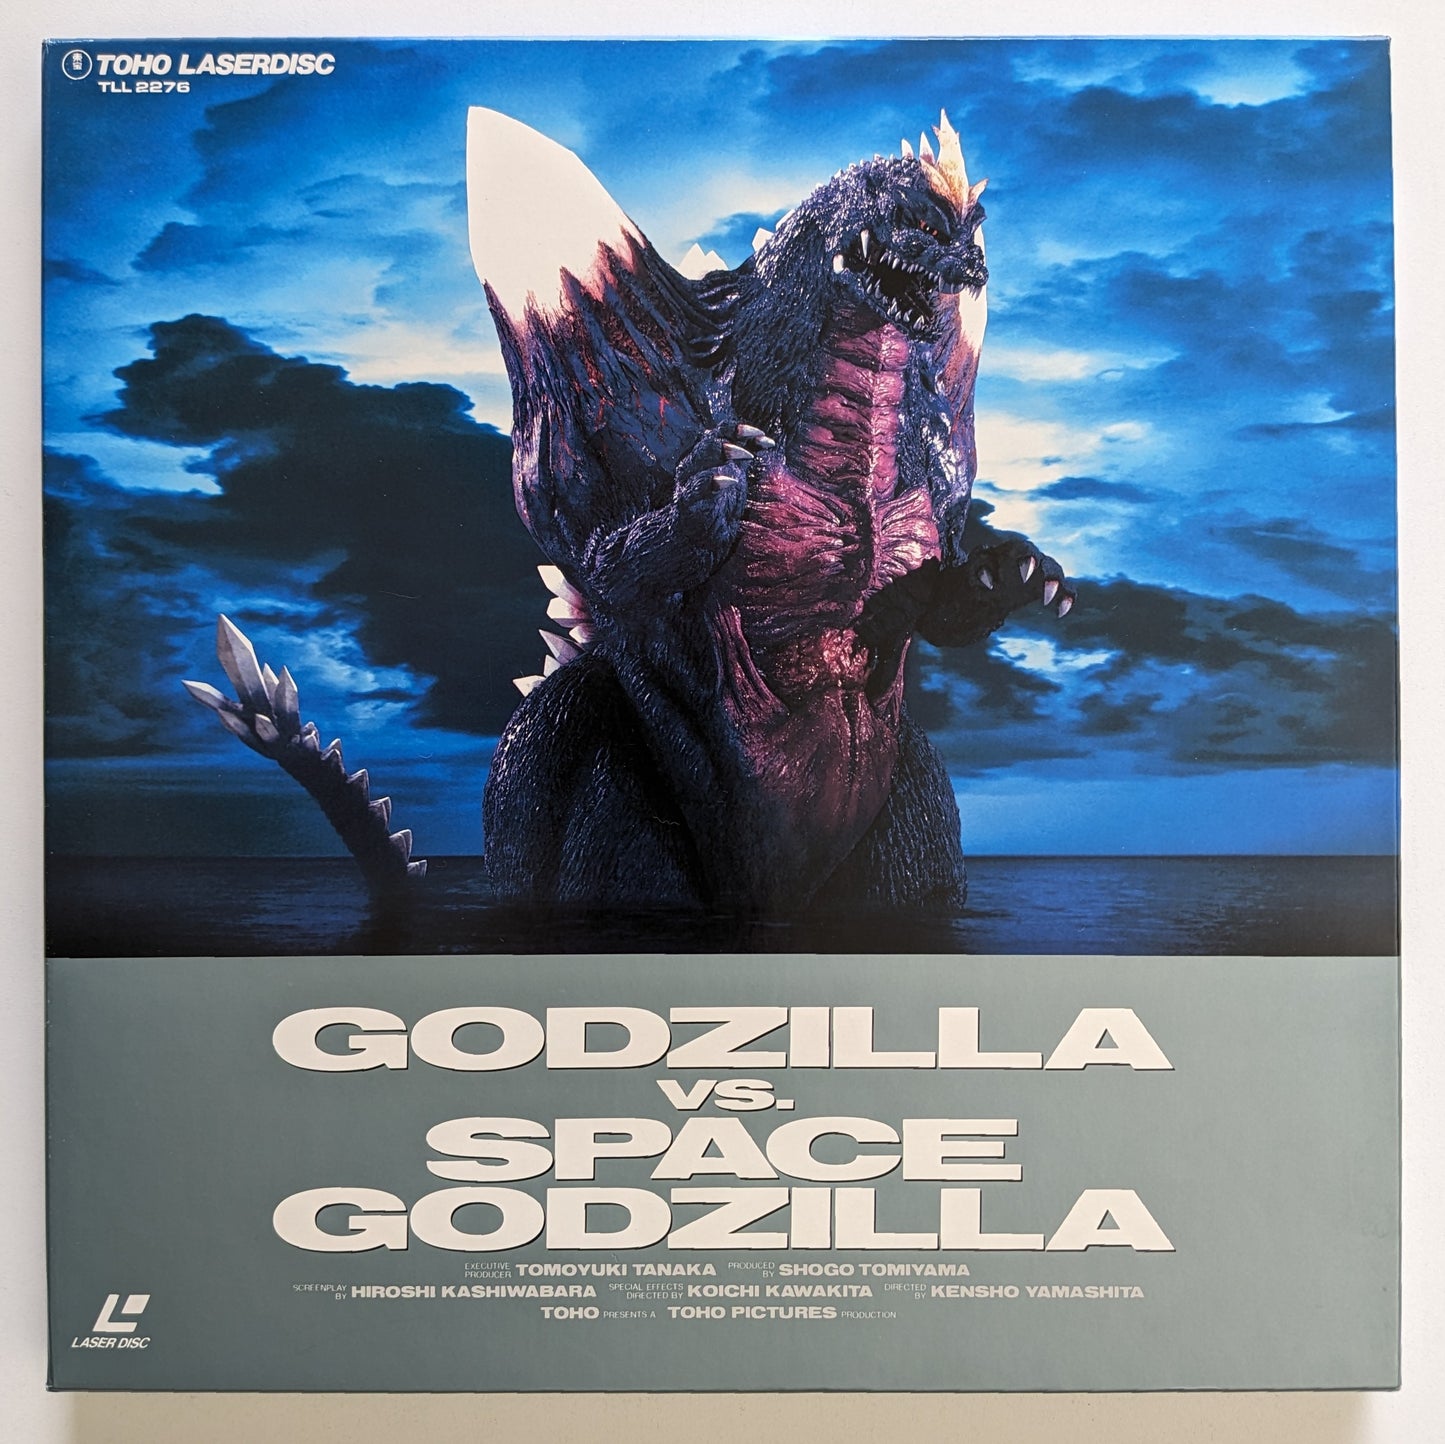 Godzilla vs. Spacegodzilla box set (1994) Japanese Laserdisc